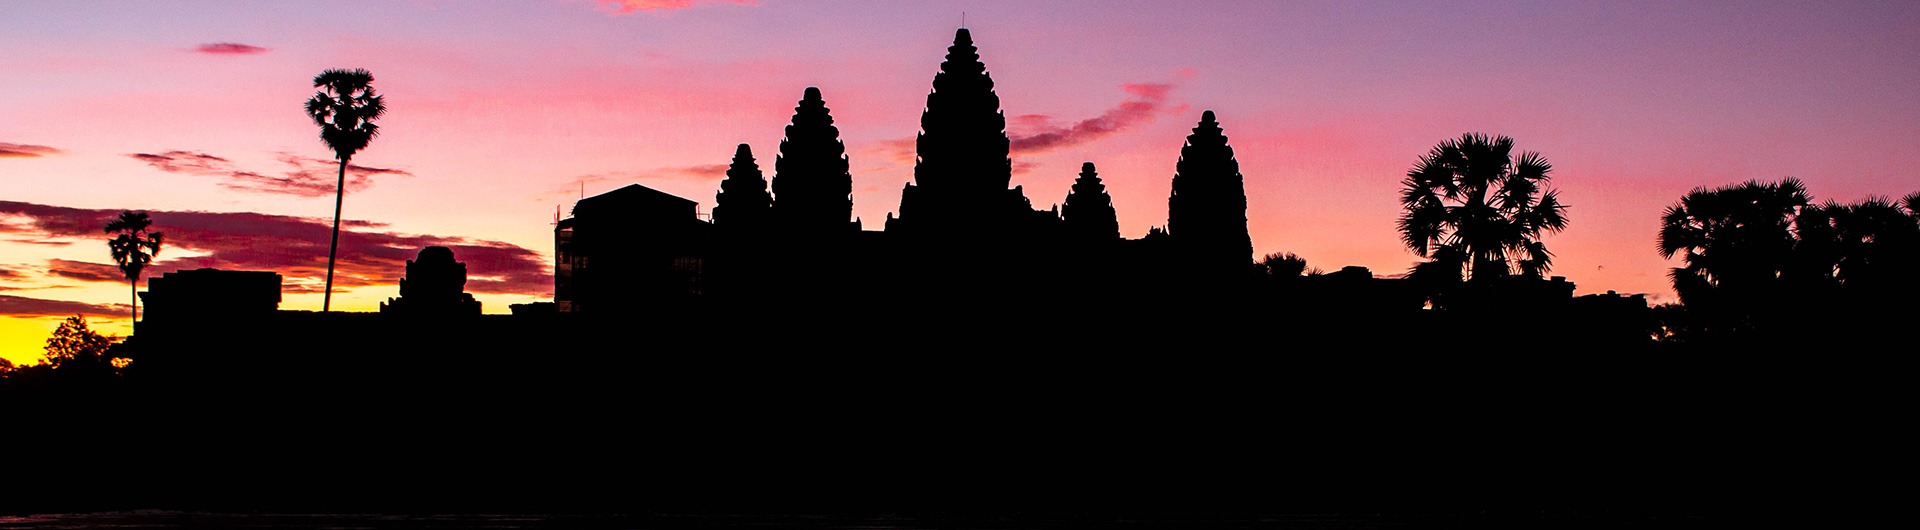 Towers of Angkor Wat at sunrise, Cambodia